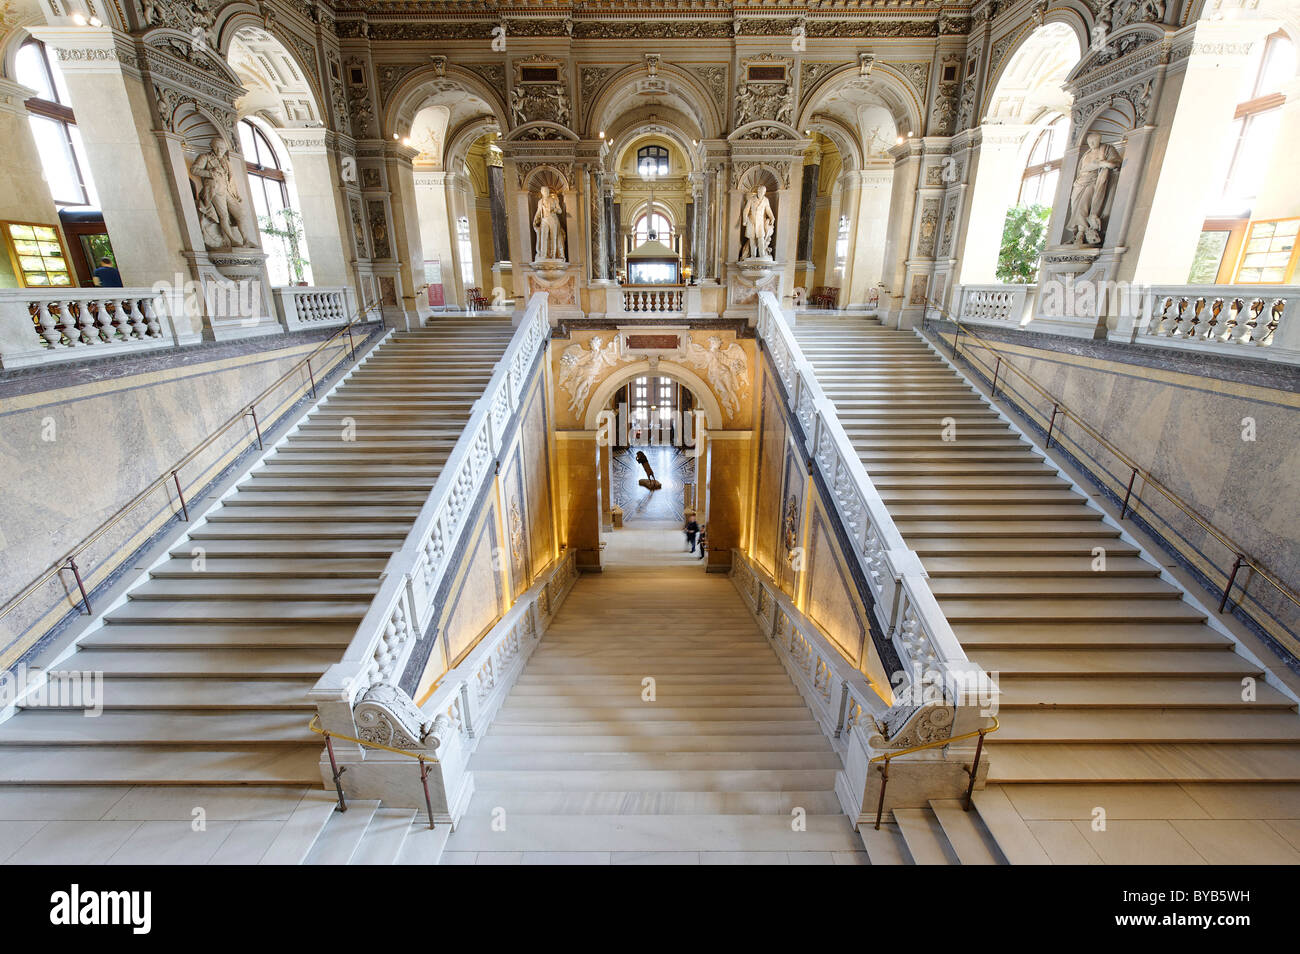 Escalier, coupole, Musée d'Histoire Naturelle, Maria Theresienplatz square, 1er arrondissement, Vienne, Autriche, Europe Banque D'Images